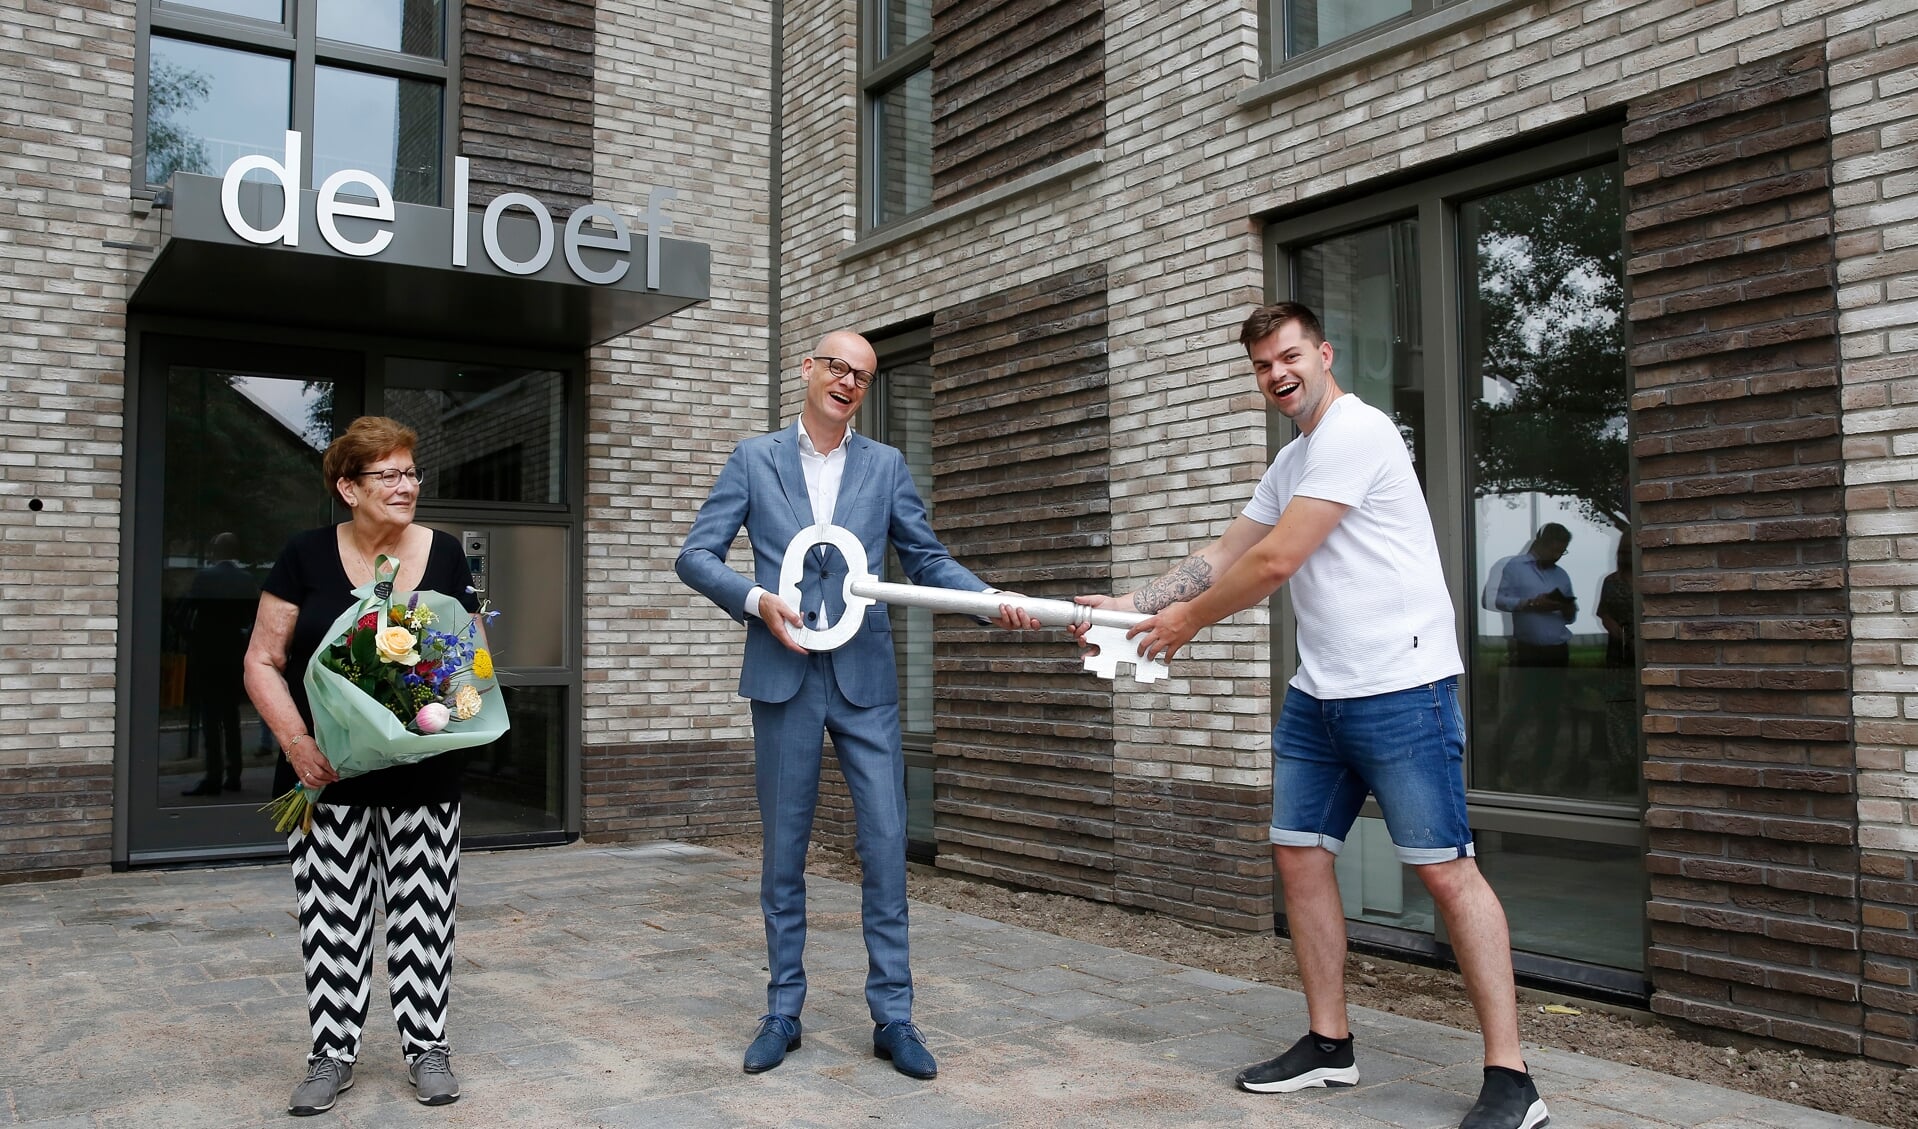 Directeur-bestuurder François Claessens (midden) reikt een sleutel uit aan twee bewoners van De Loef.